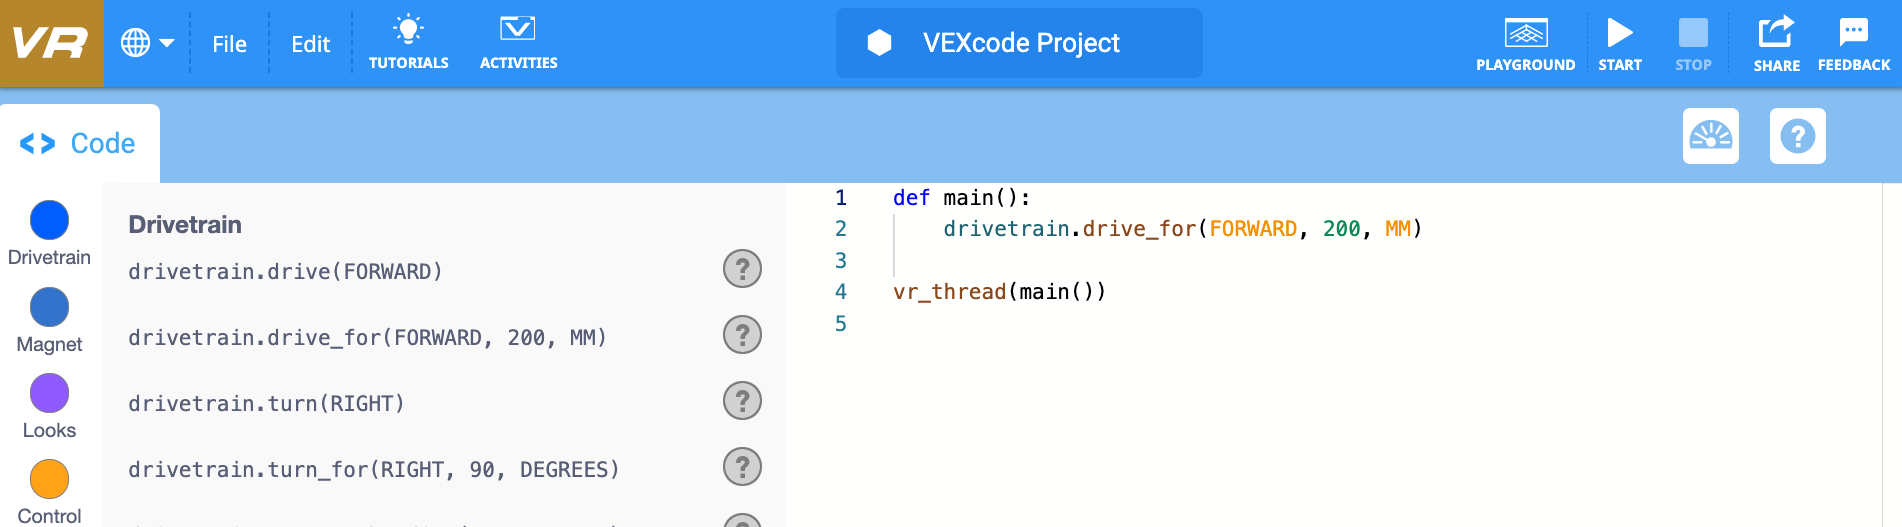 Modo Python de VEXcode VR